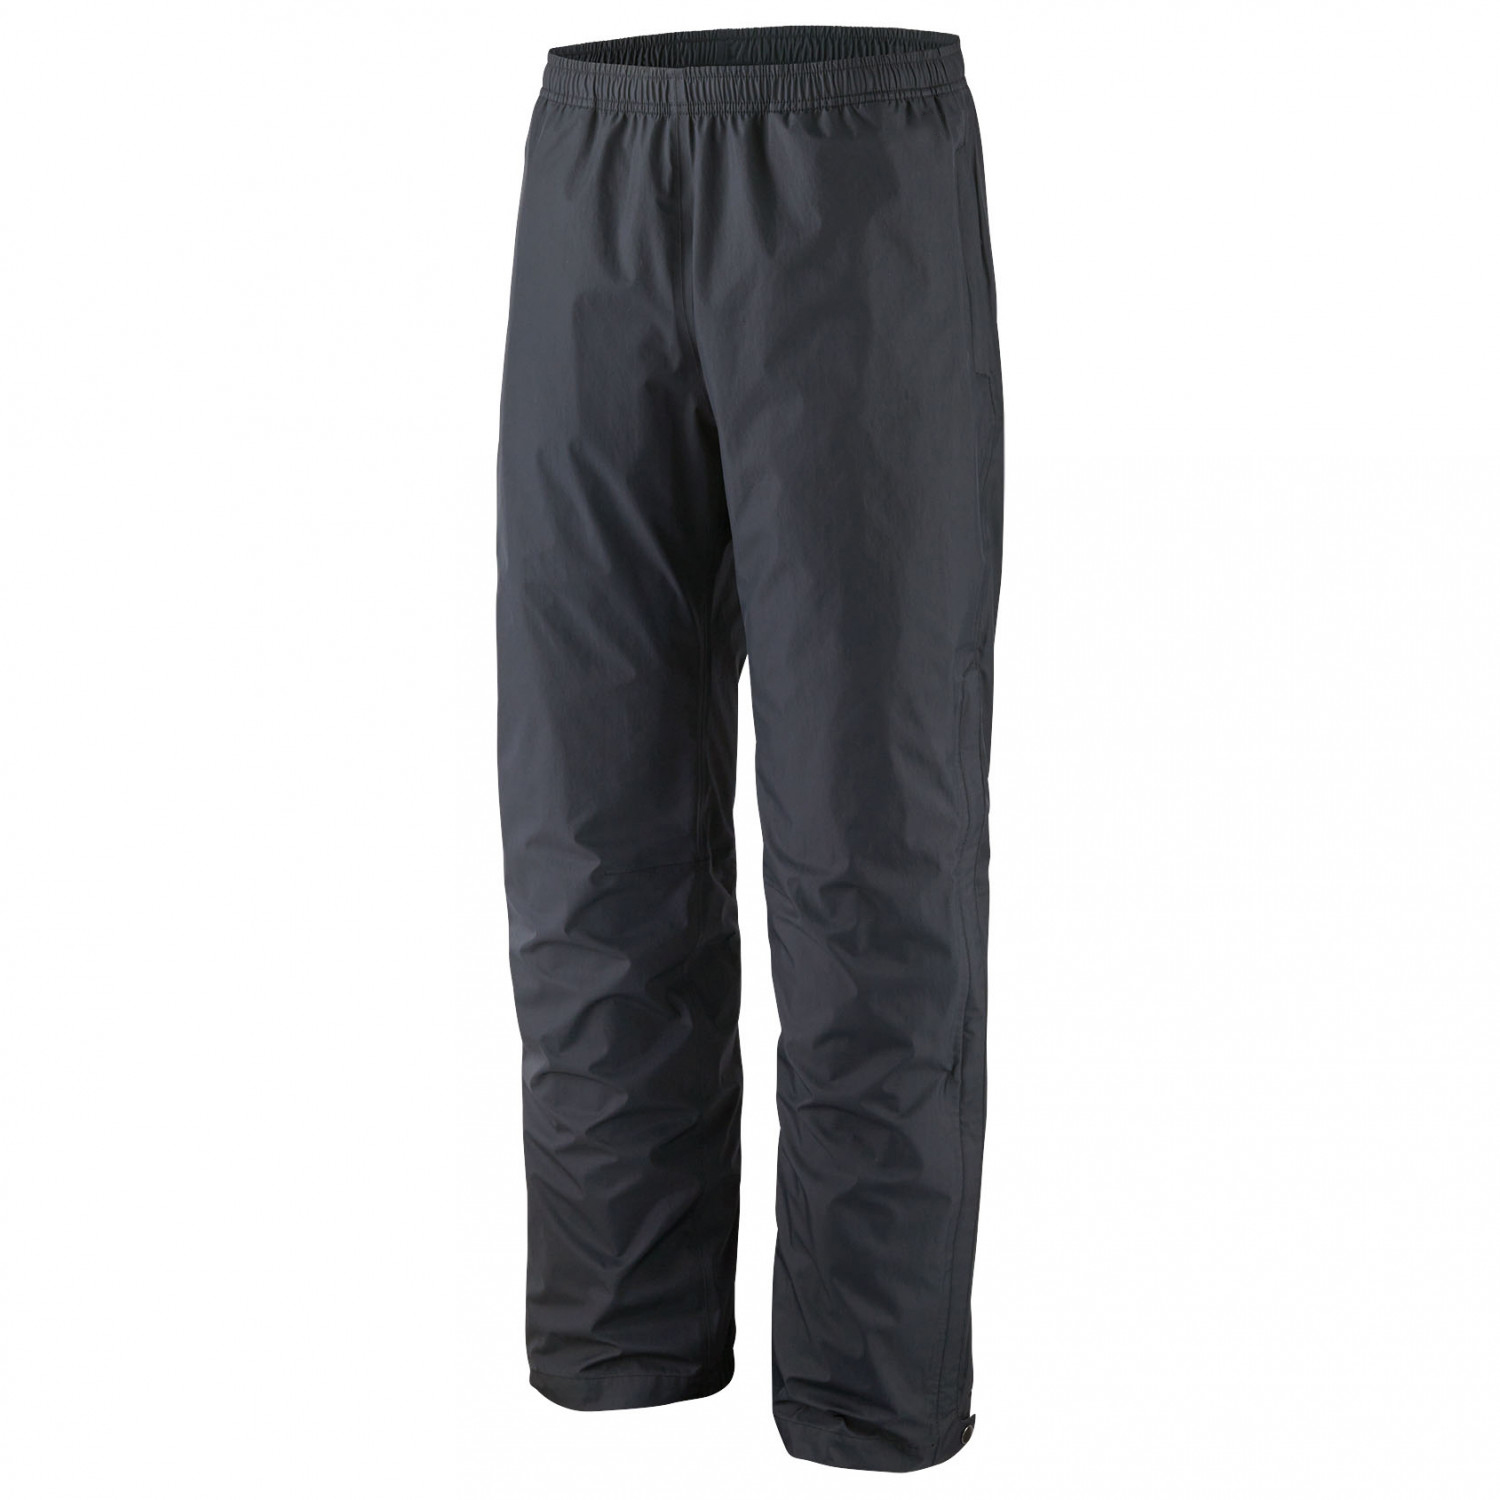 Torrentshell 3L Pants Waterproof trousers